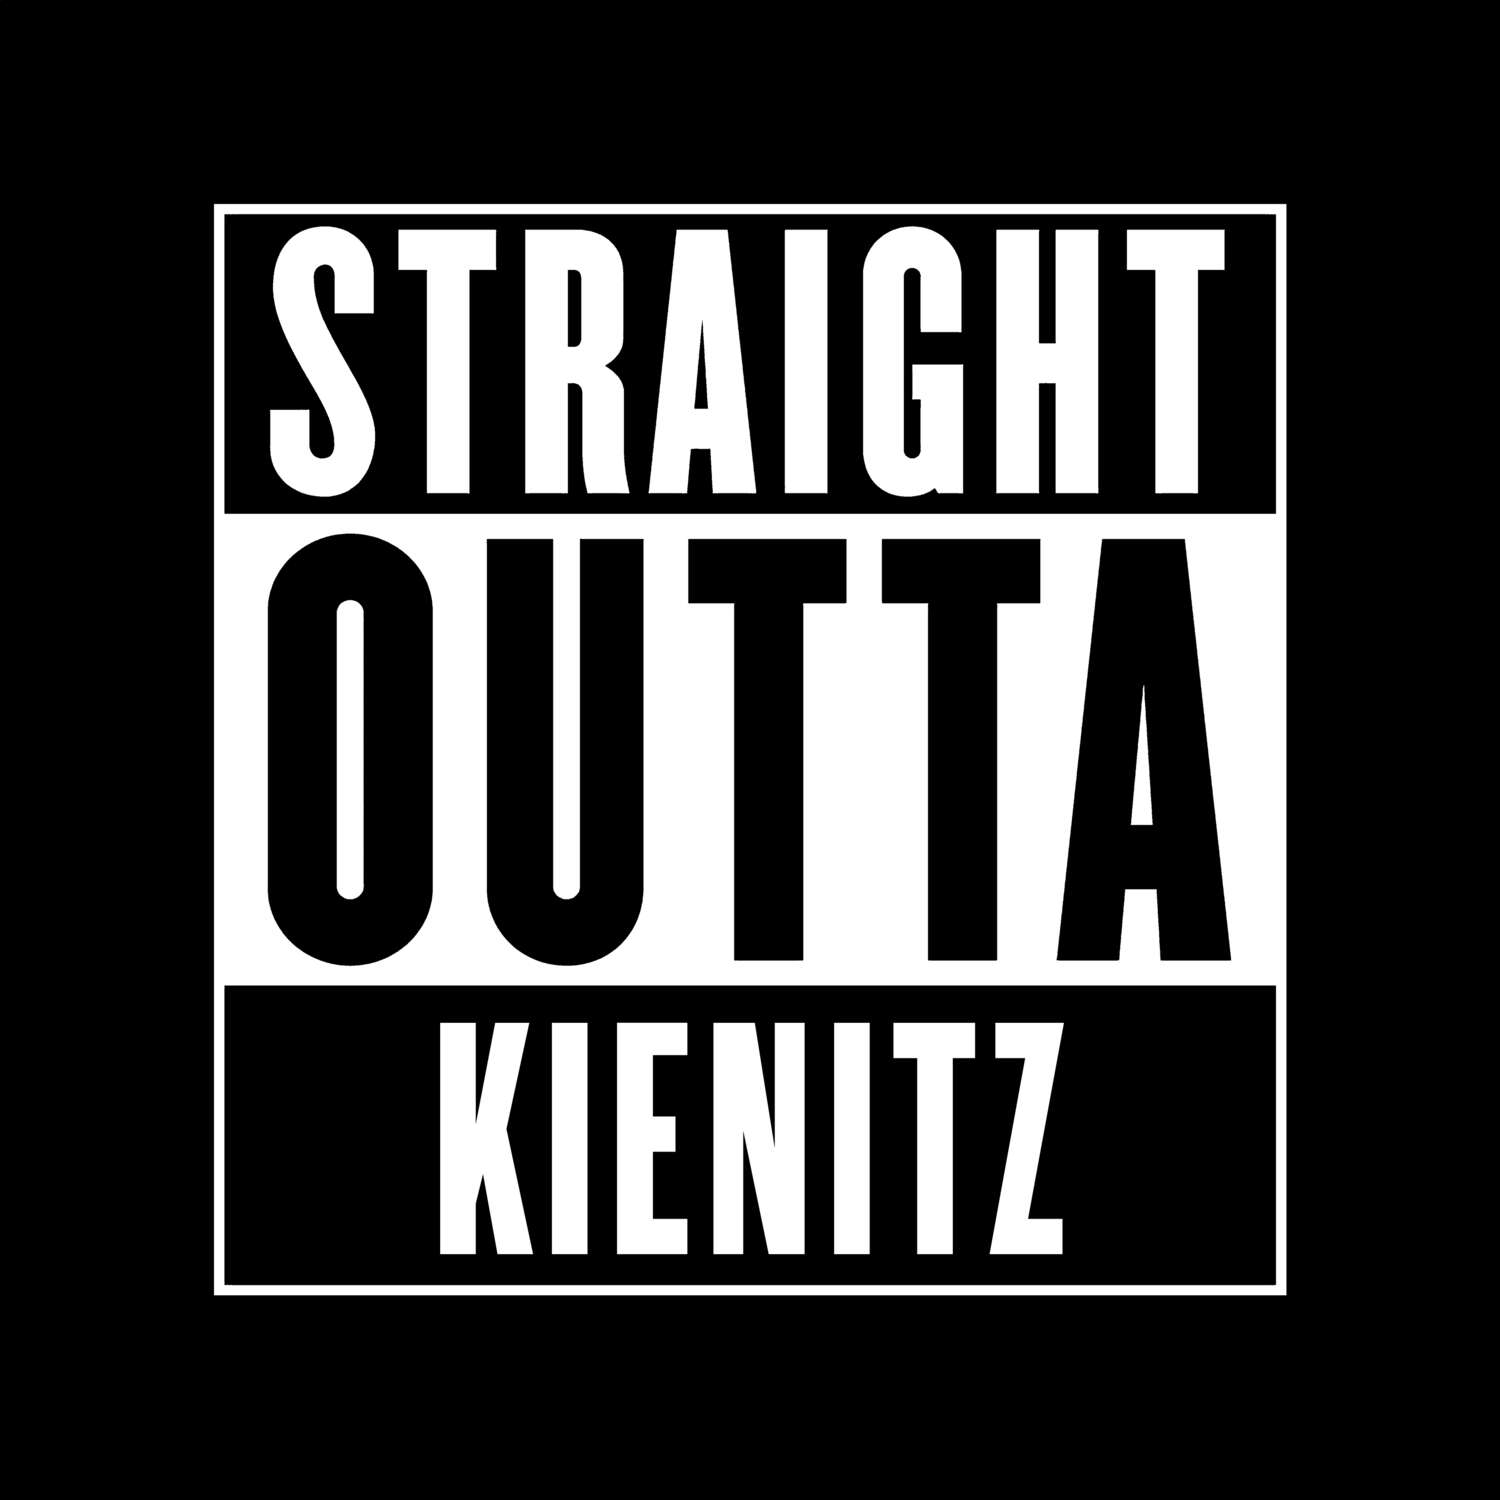 Kienitz T-Shirt »Straight Outta«